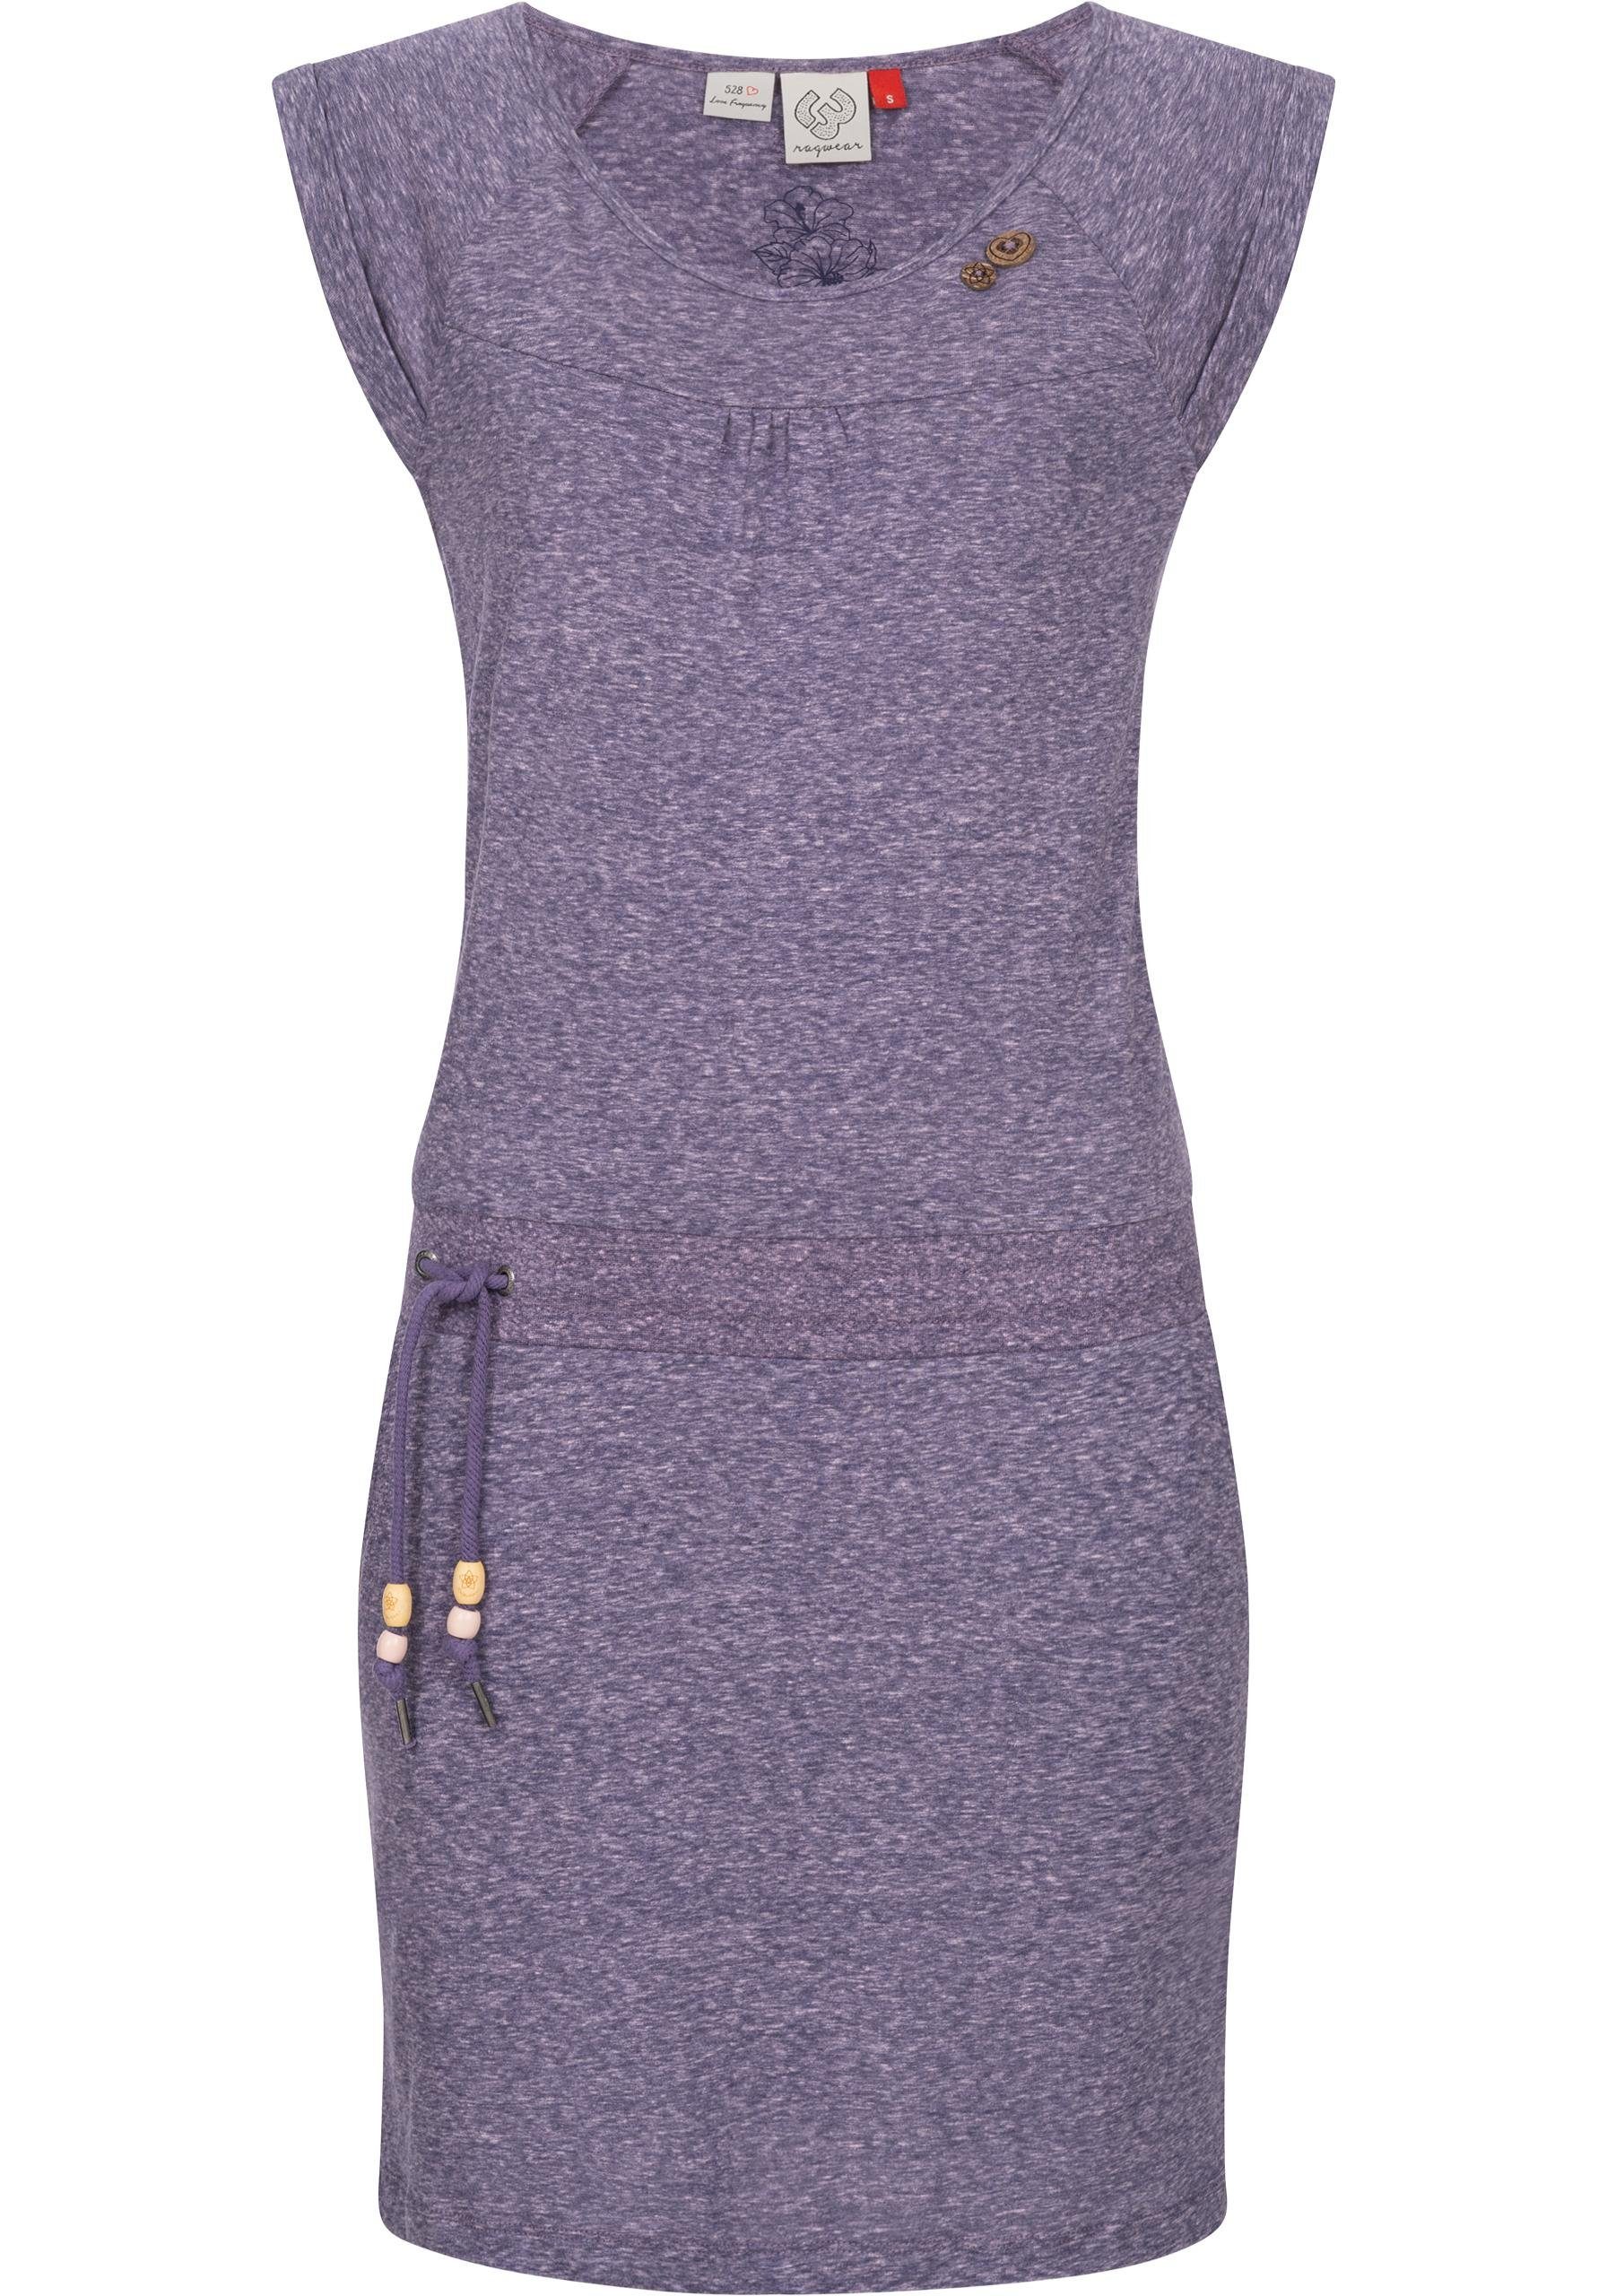 Ragwear Sommerkleid Penelope leichtes Baumwoll Kleid mit Print lavender